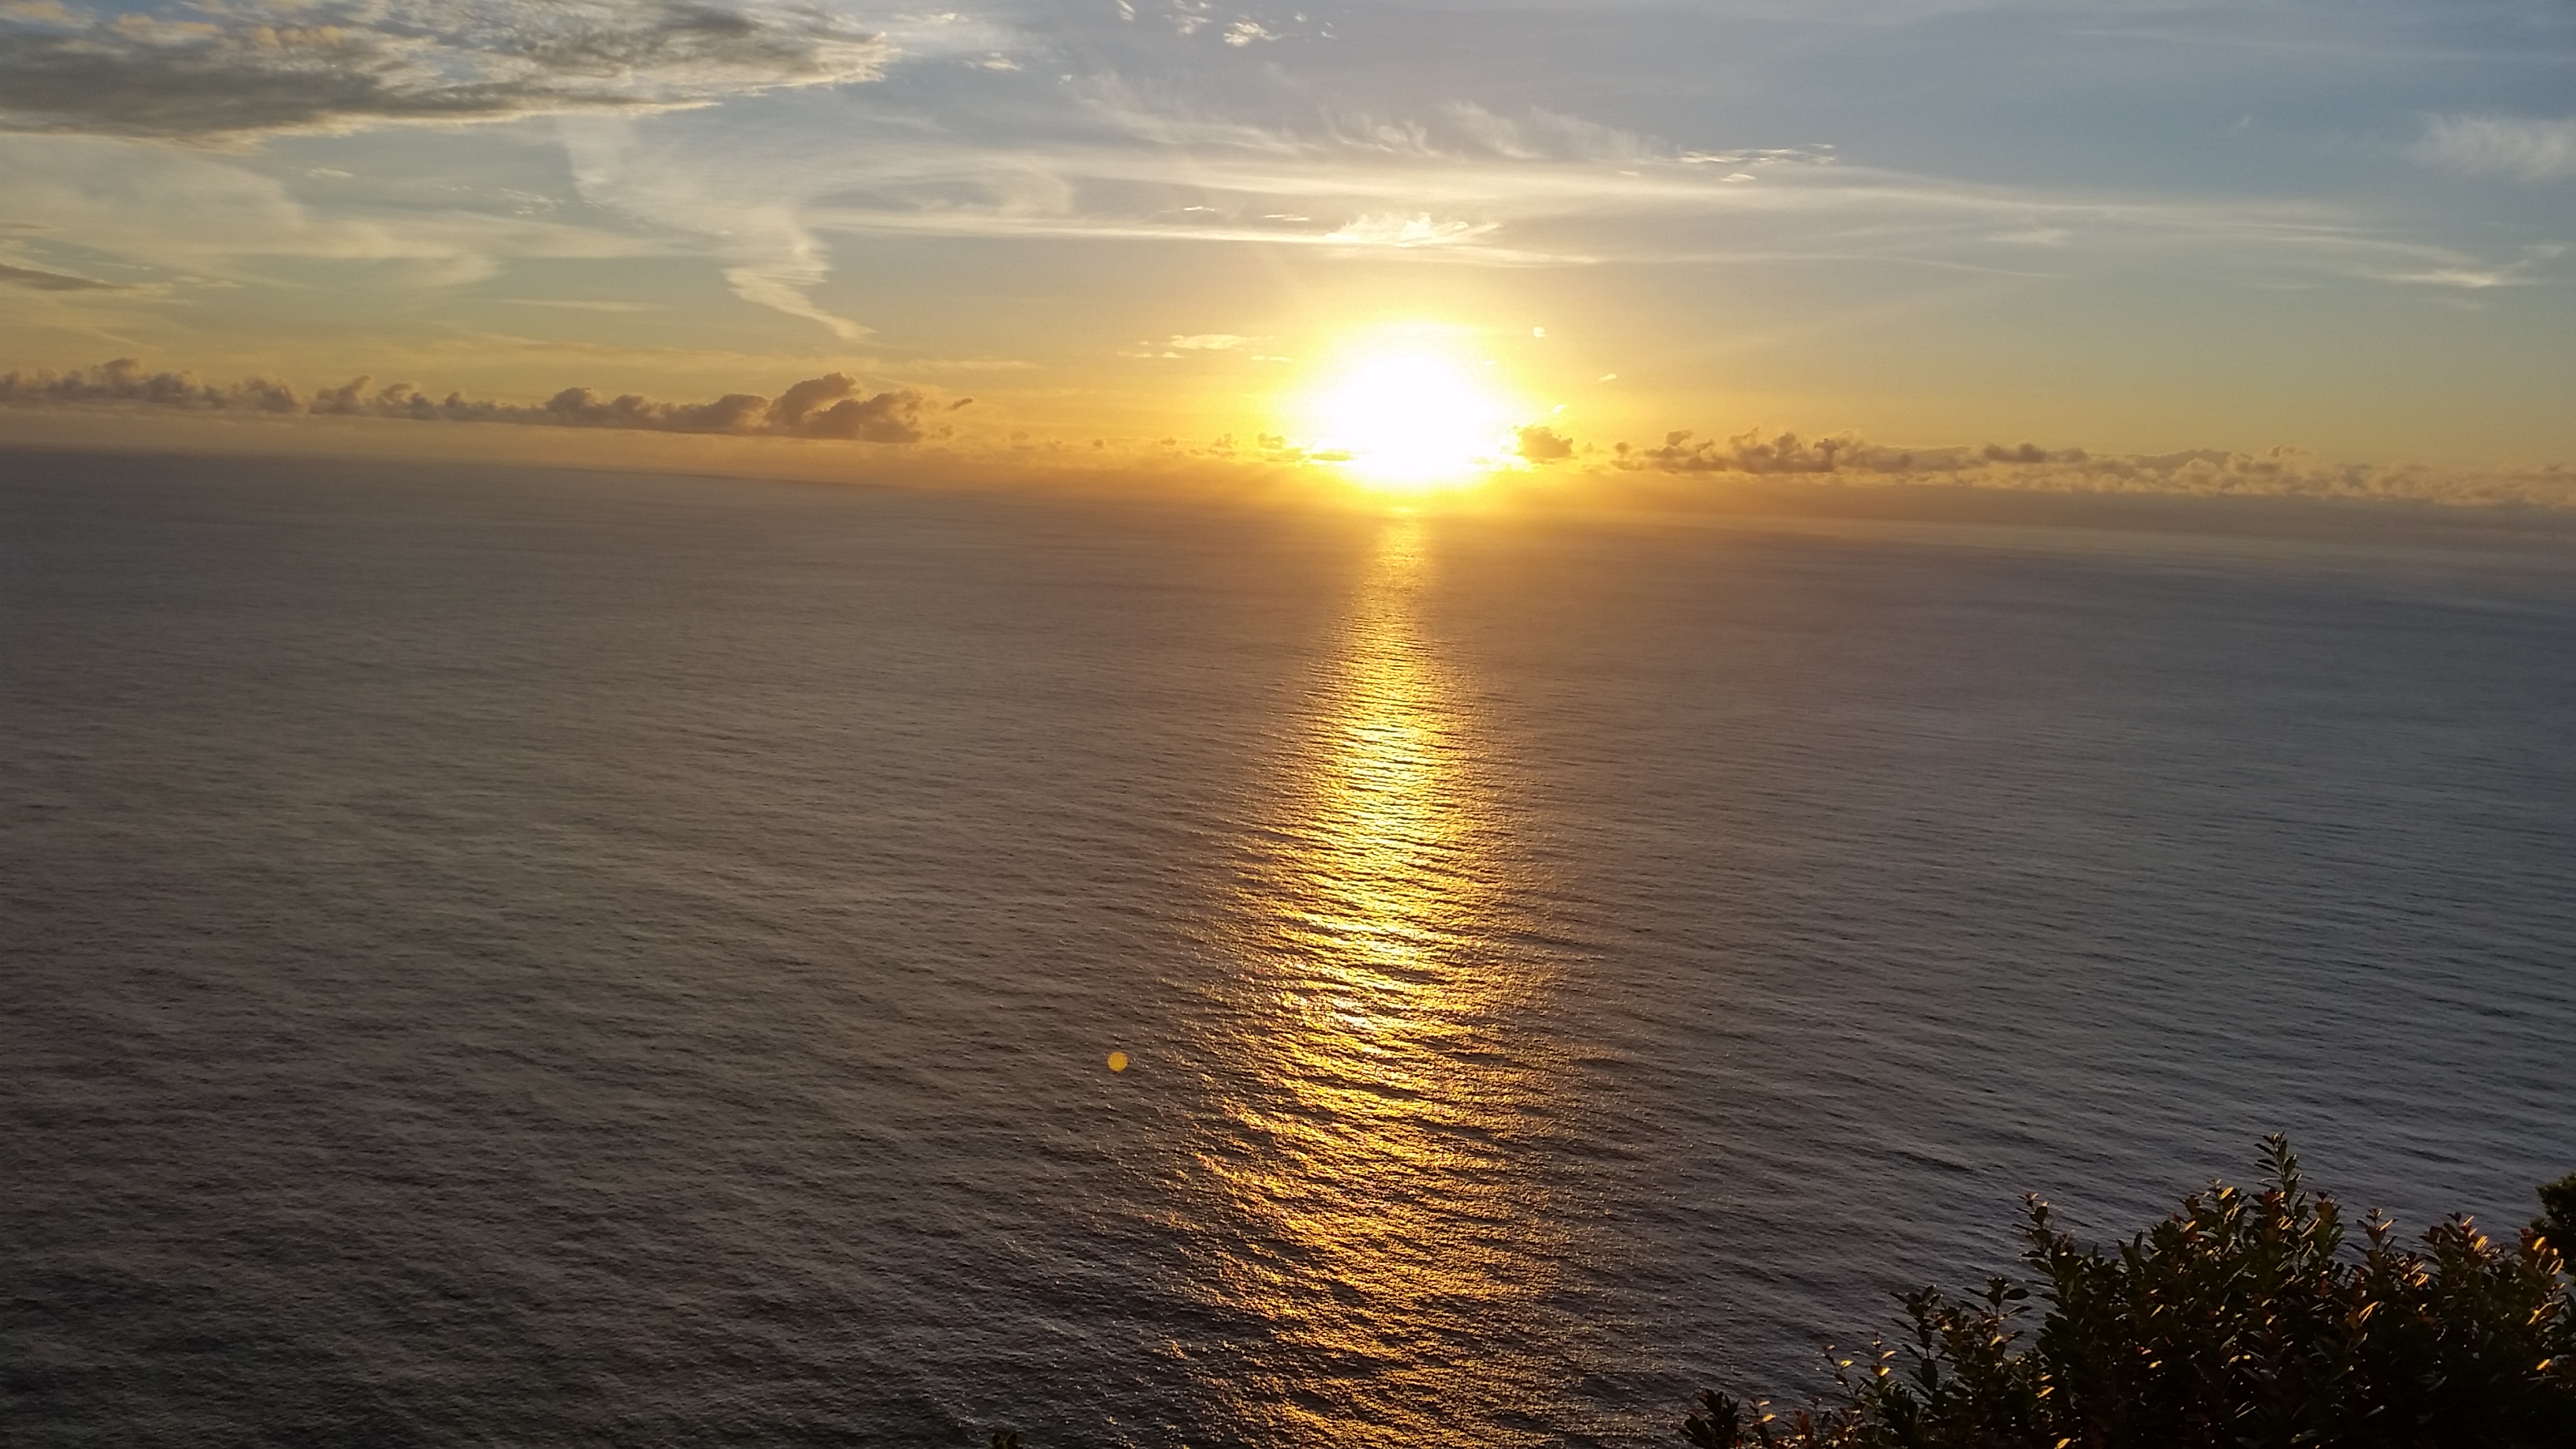 Sunrise at Ponta da Madrugada viewpoint